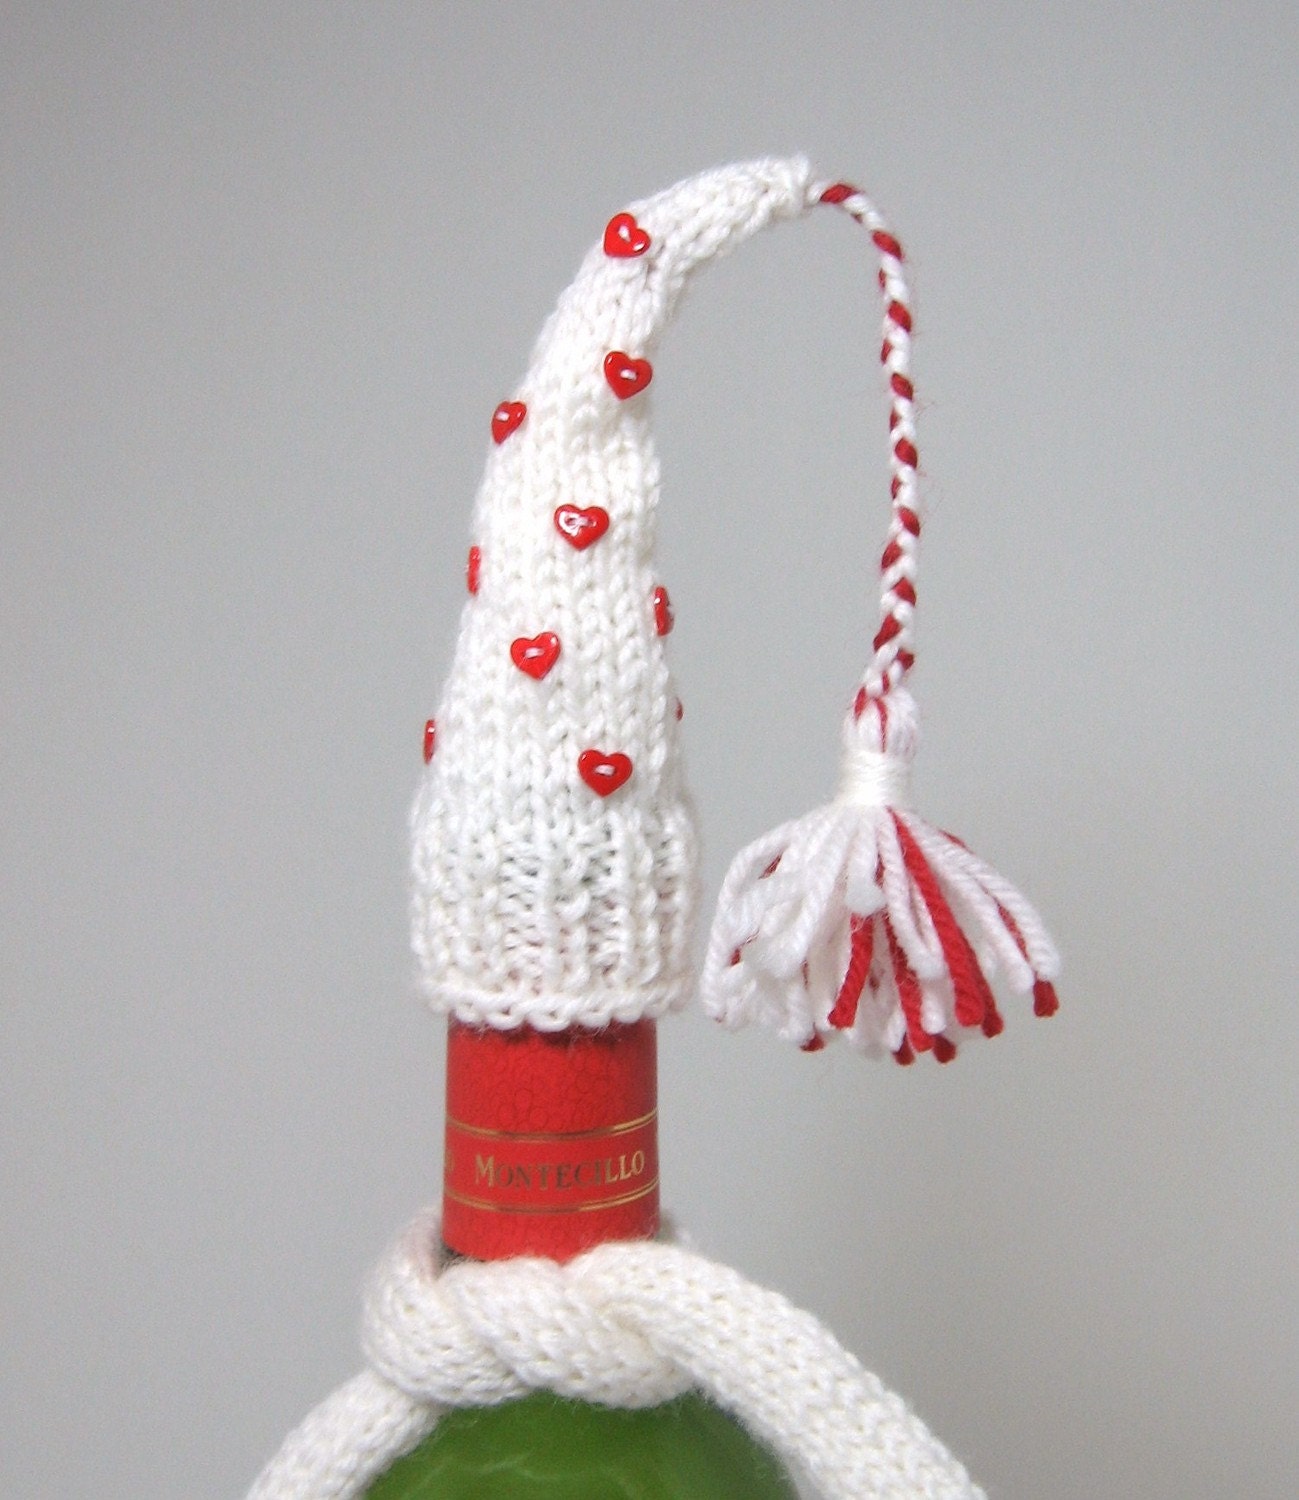 Valentine's Day Wine Bottle Decoration - Hand Knit in Wool